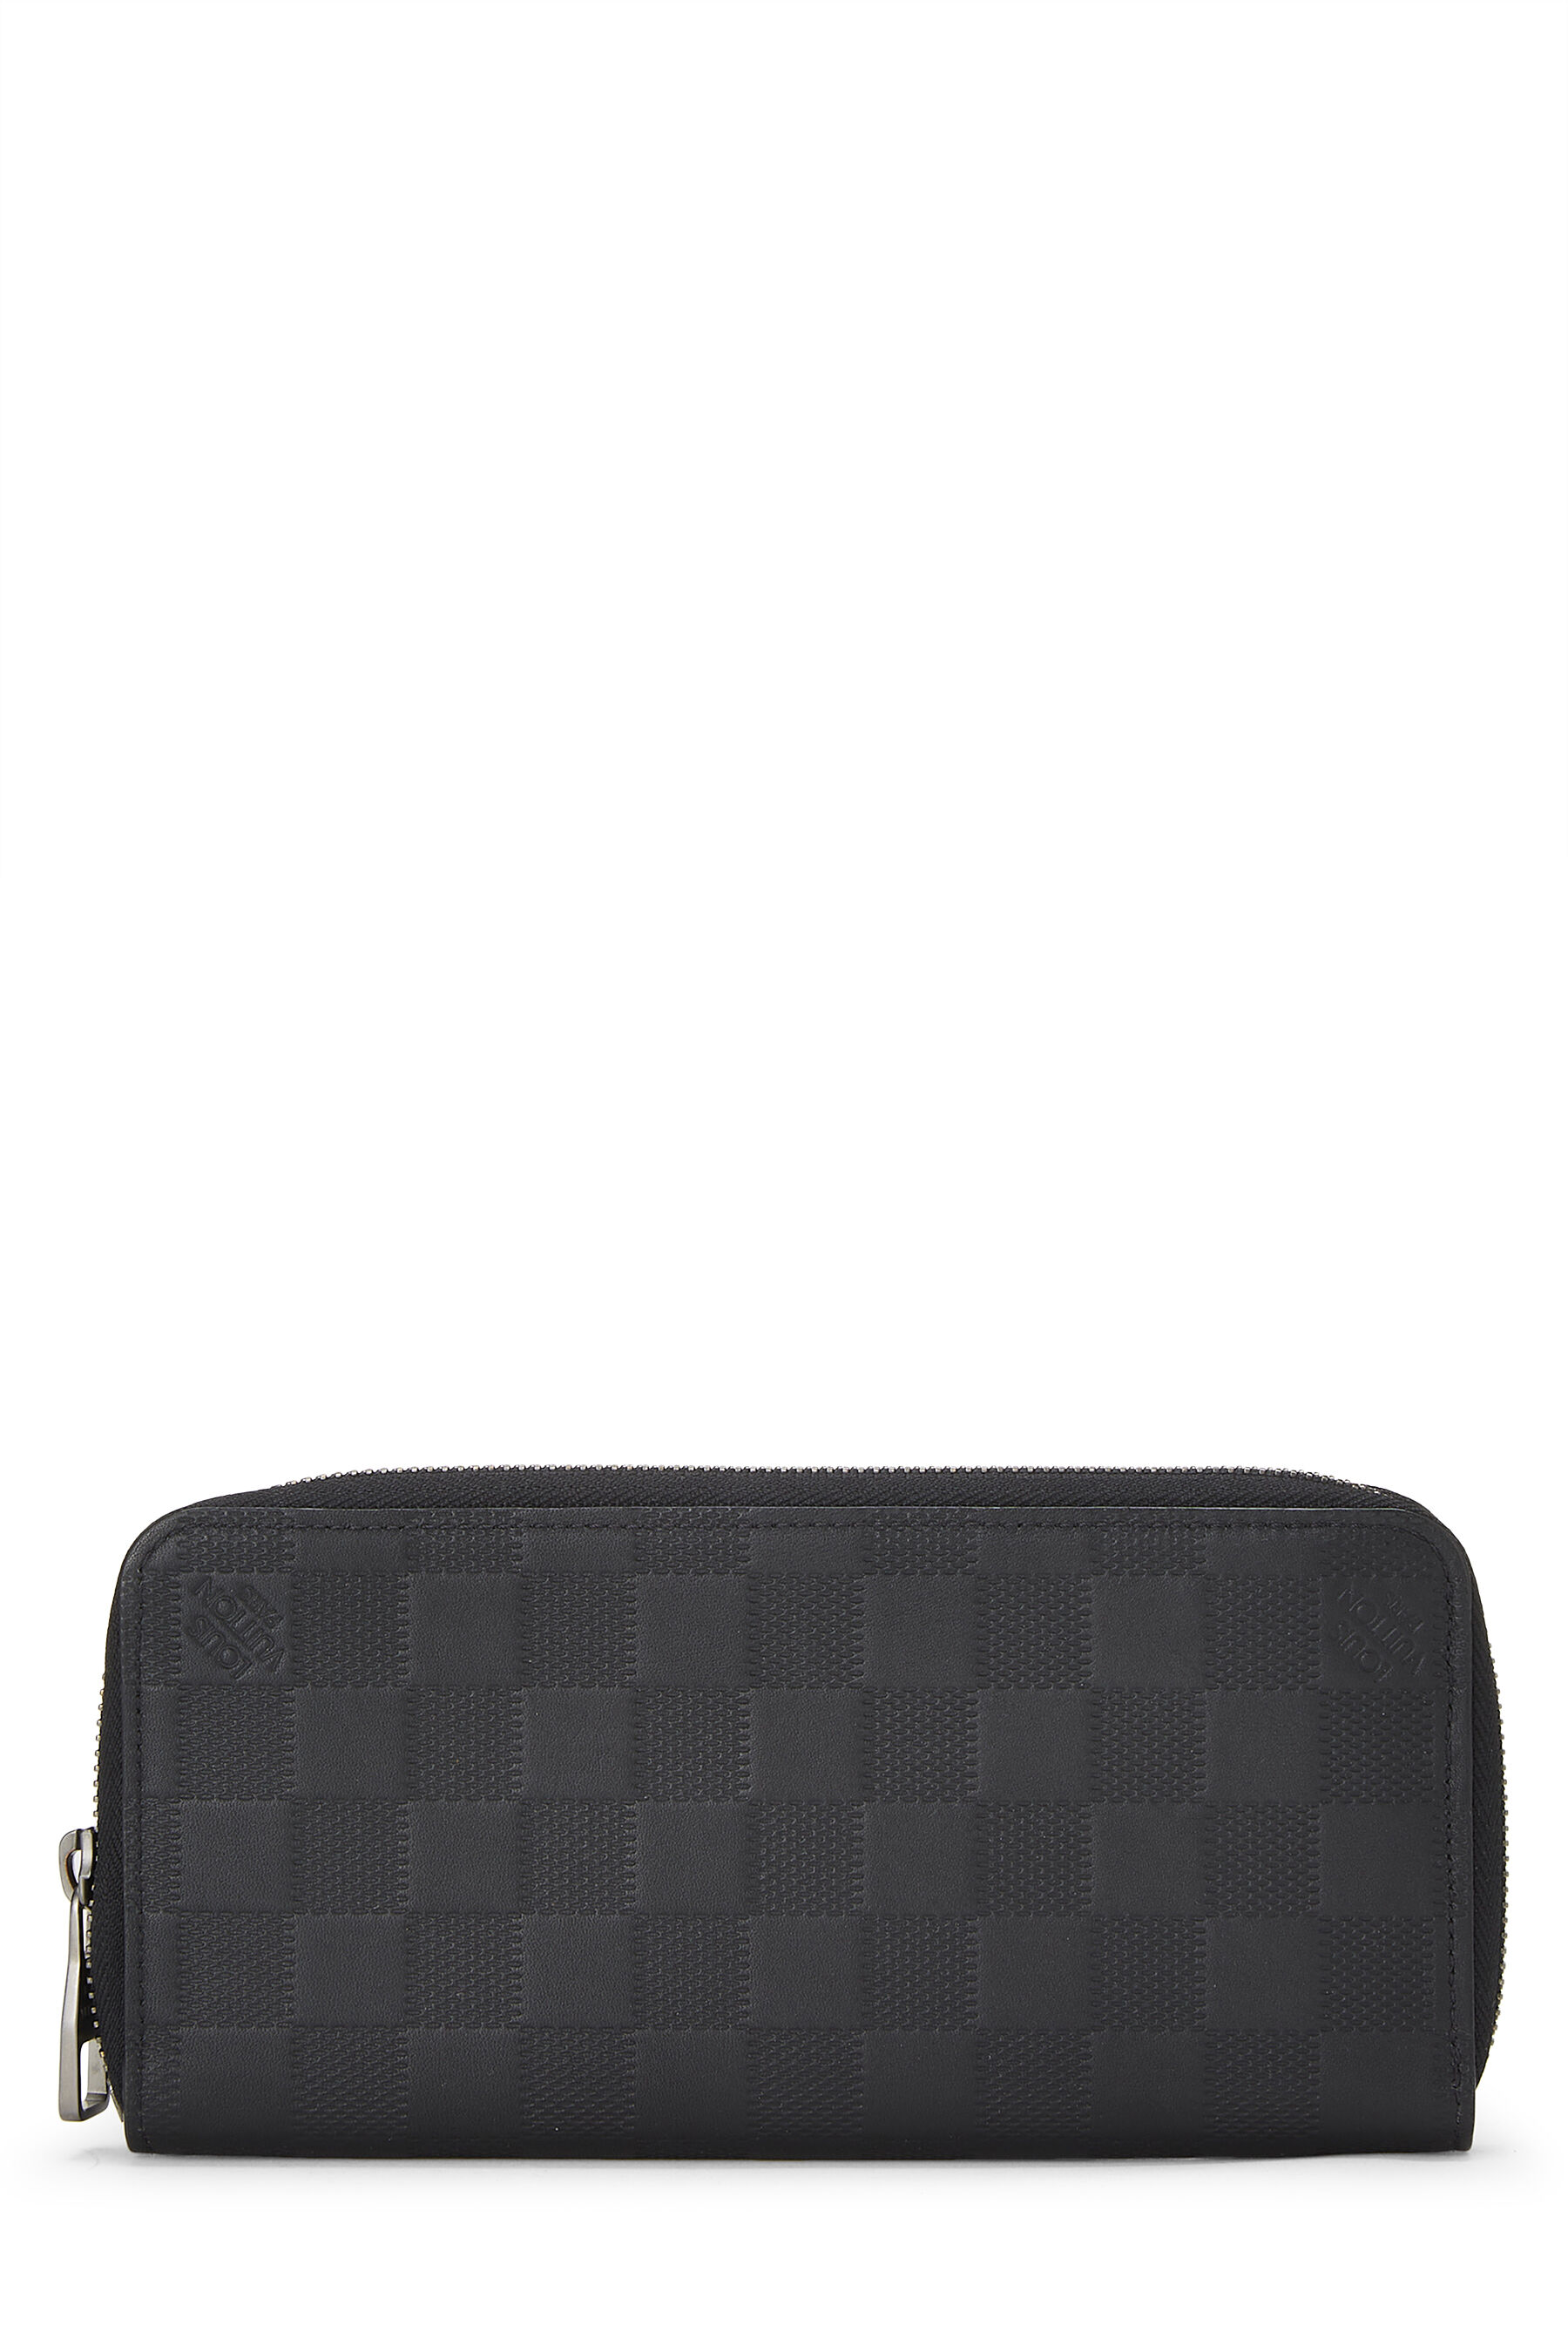 Louis Vuitton Damier Graphite Vertical Zippy Wallet - Black Wallets,  Accessories - LOU158861